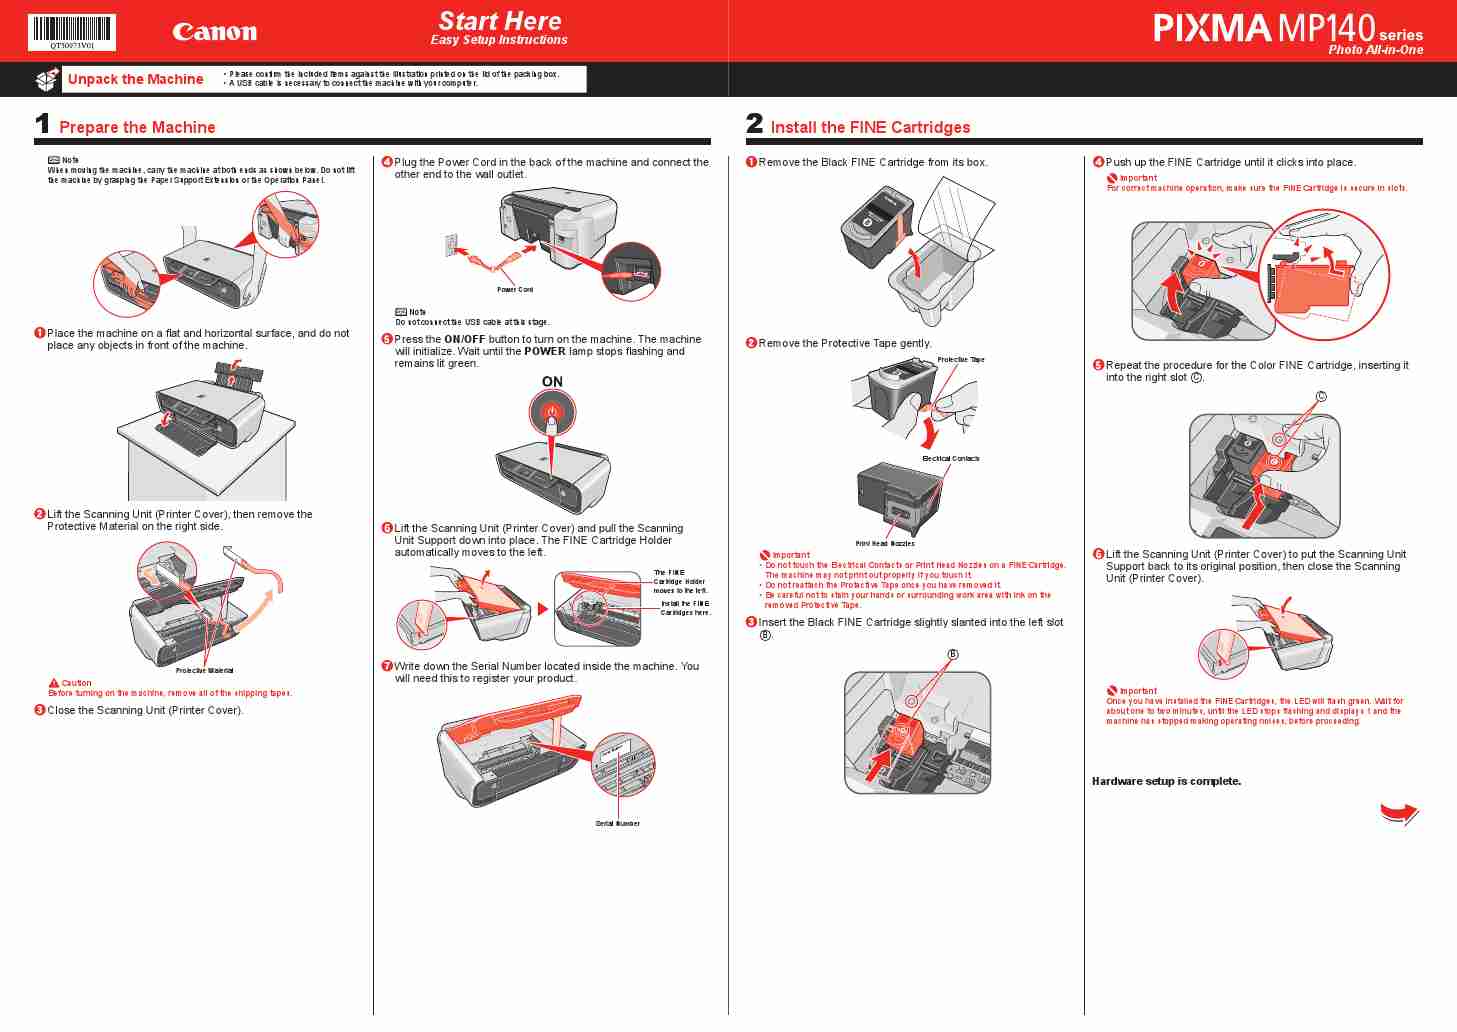 CANON PIXMA MP140-page_pdf